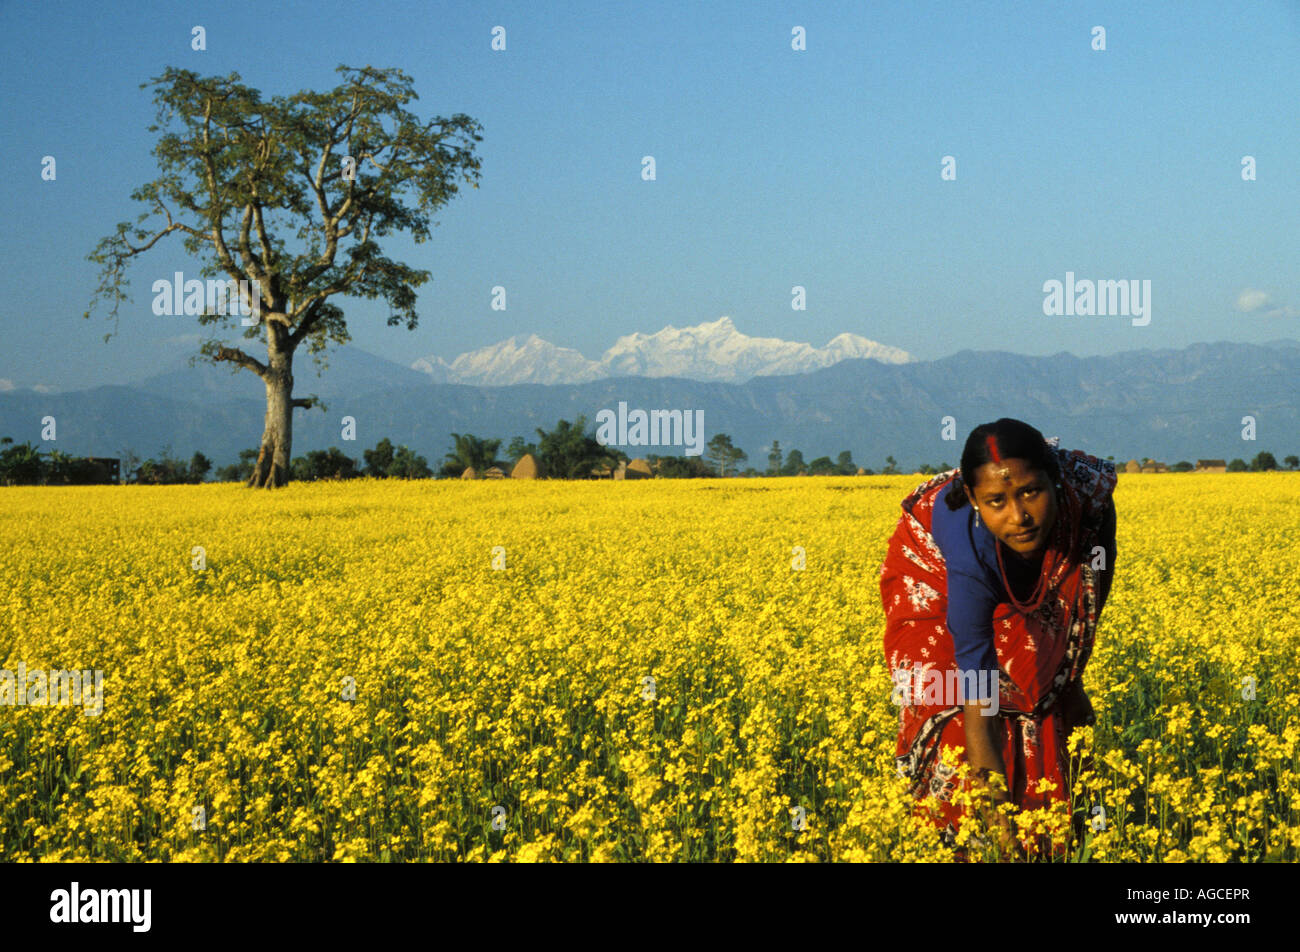 Le Népal dans les graines de moutarde Femme Bhairawa avec champ couvert de neige Himalaya montagnes en arrière-plan Banque D'Images